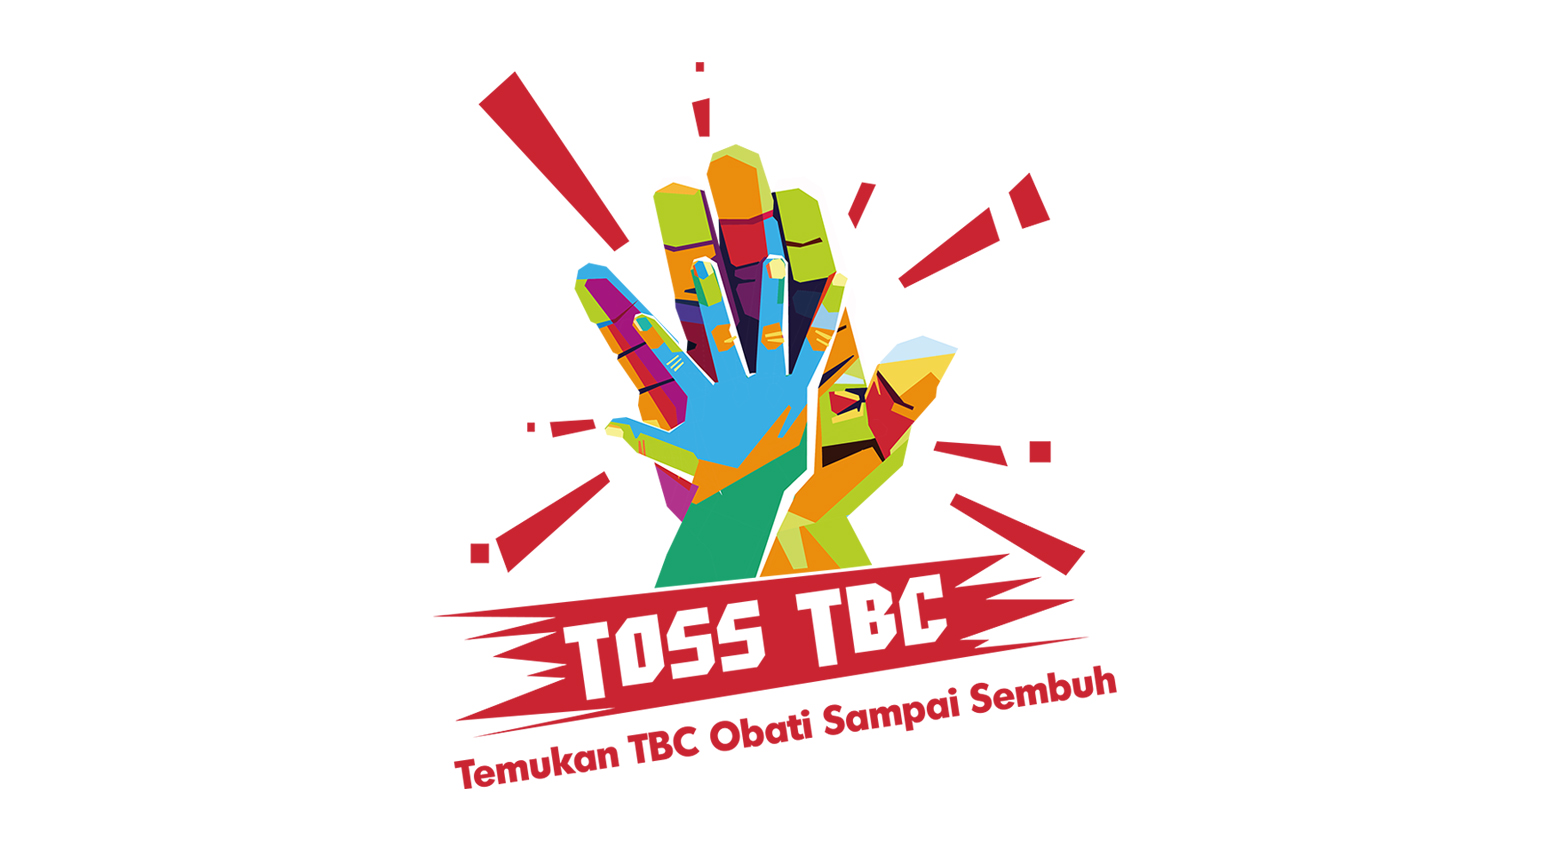 Default TOSS TBC Image